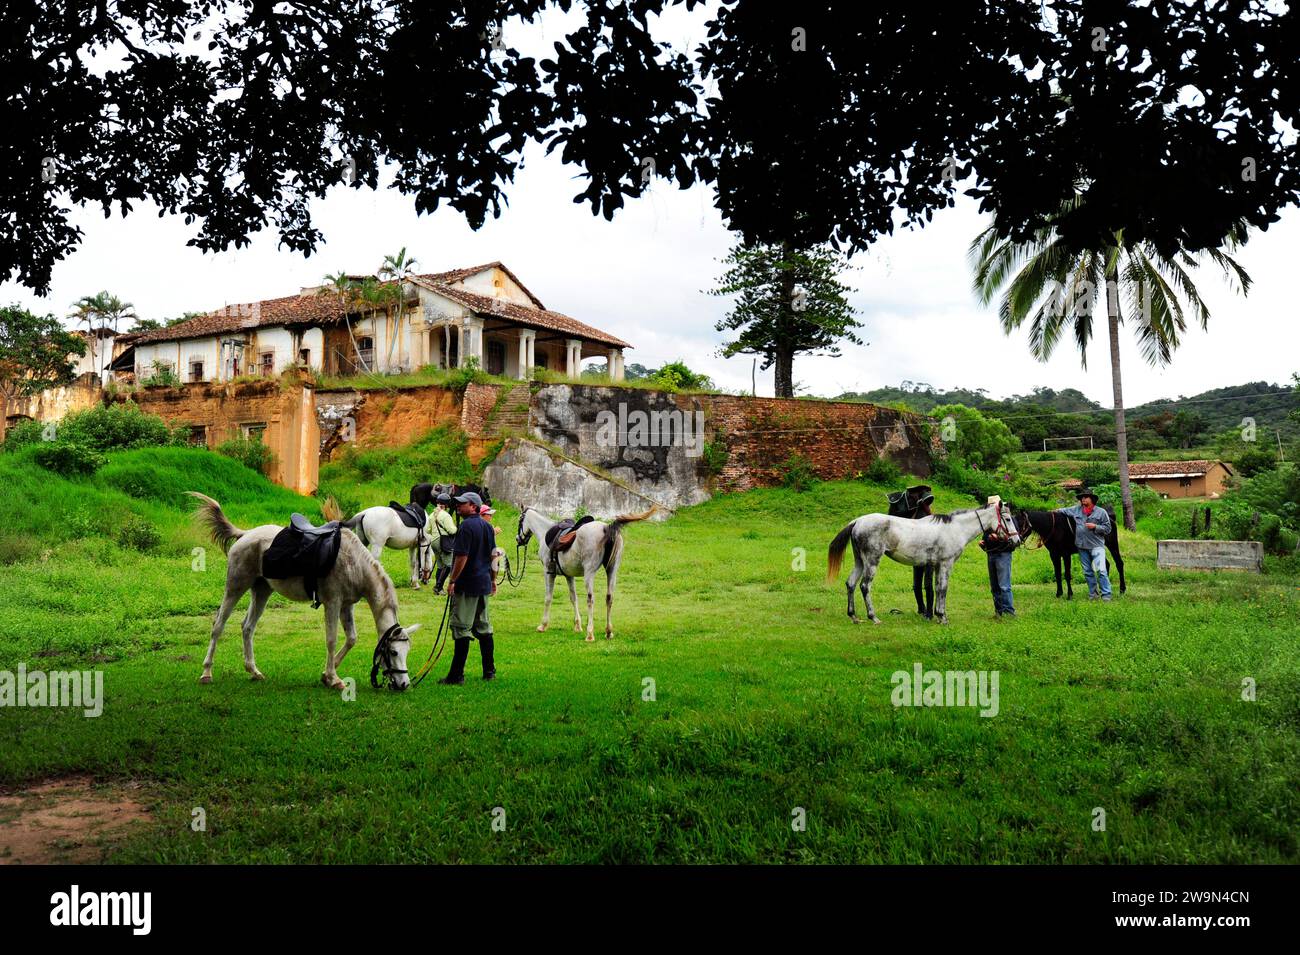 Eine Gruppe von Menschen mit ihren Pferden steht neben alten Hacienda-Ruinen in der Landschaft von Chiapas, Mexiko. Stockfoto